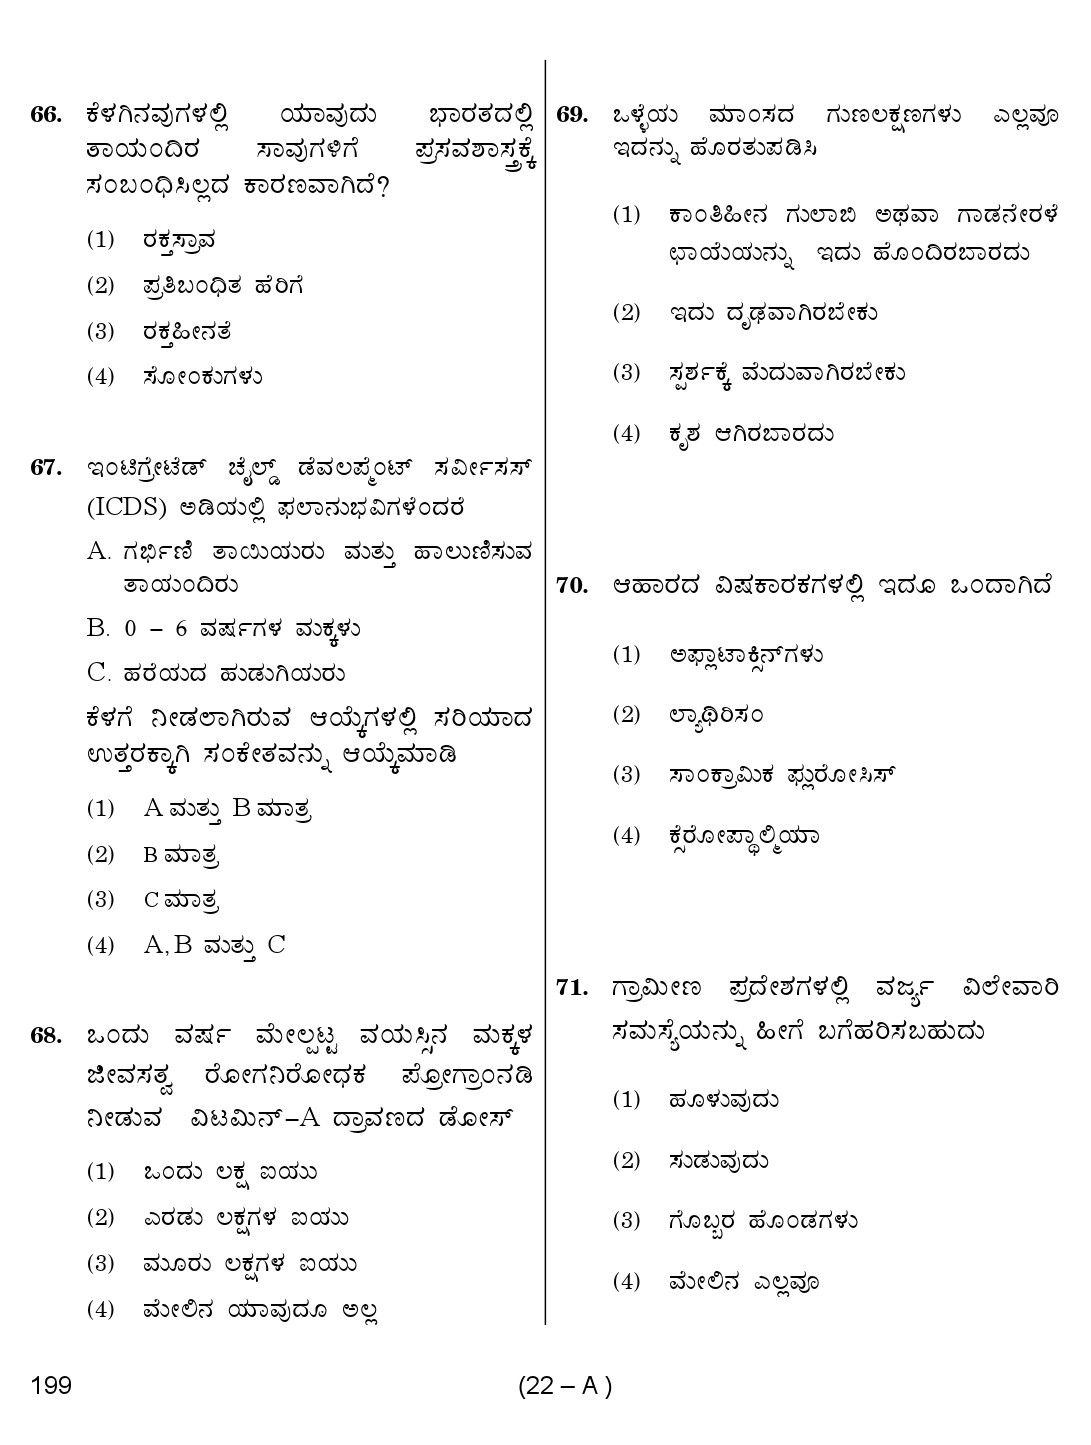 Karnataka PSC Junior Health Inspector Exam Sample Question Paper 22